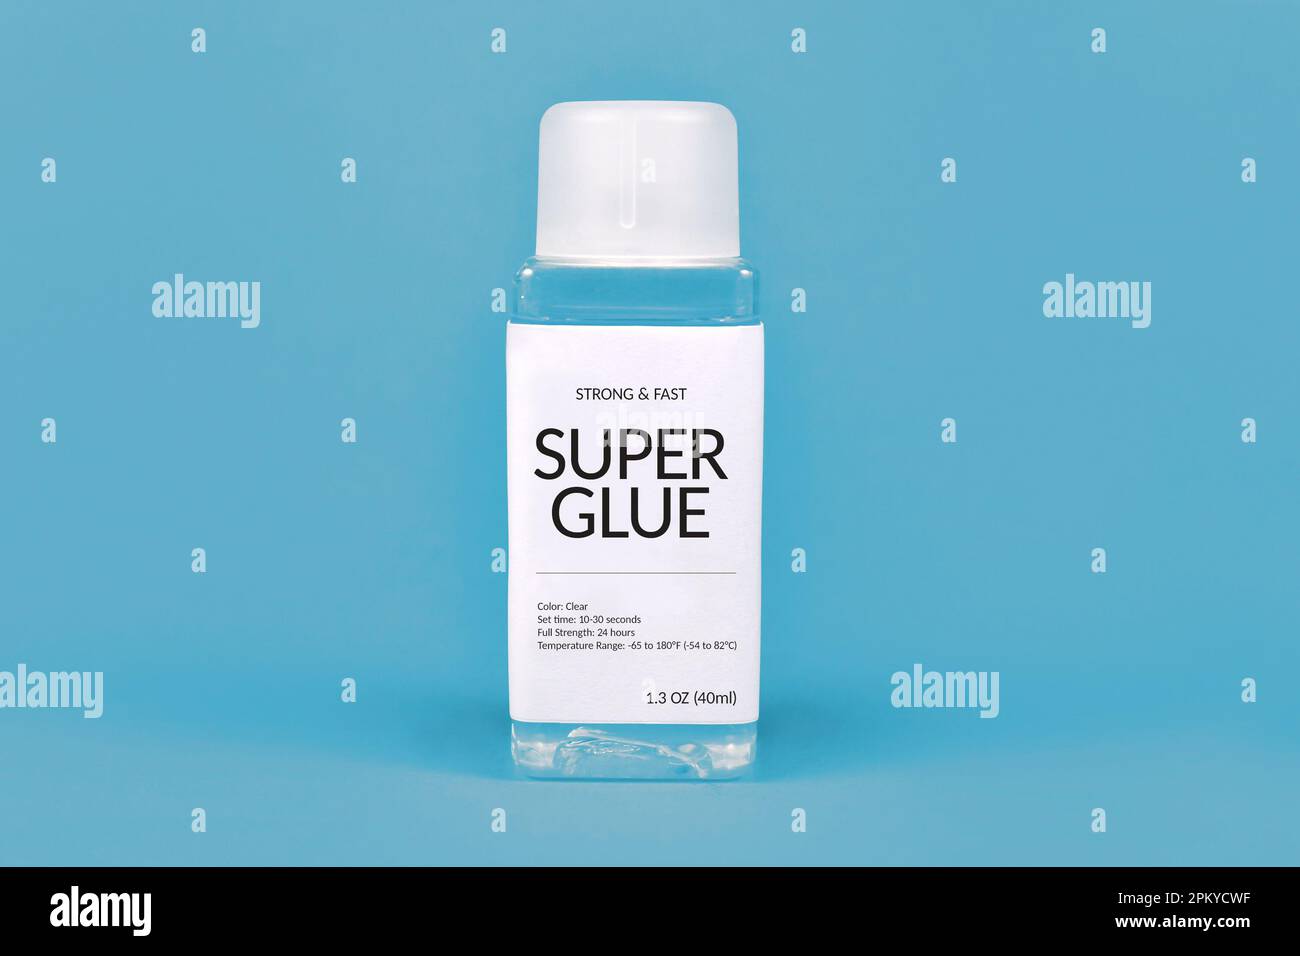 Super glue bottle on blue background Stock Photo